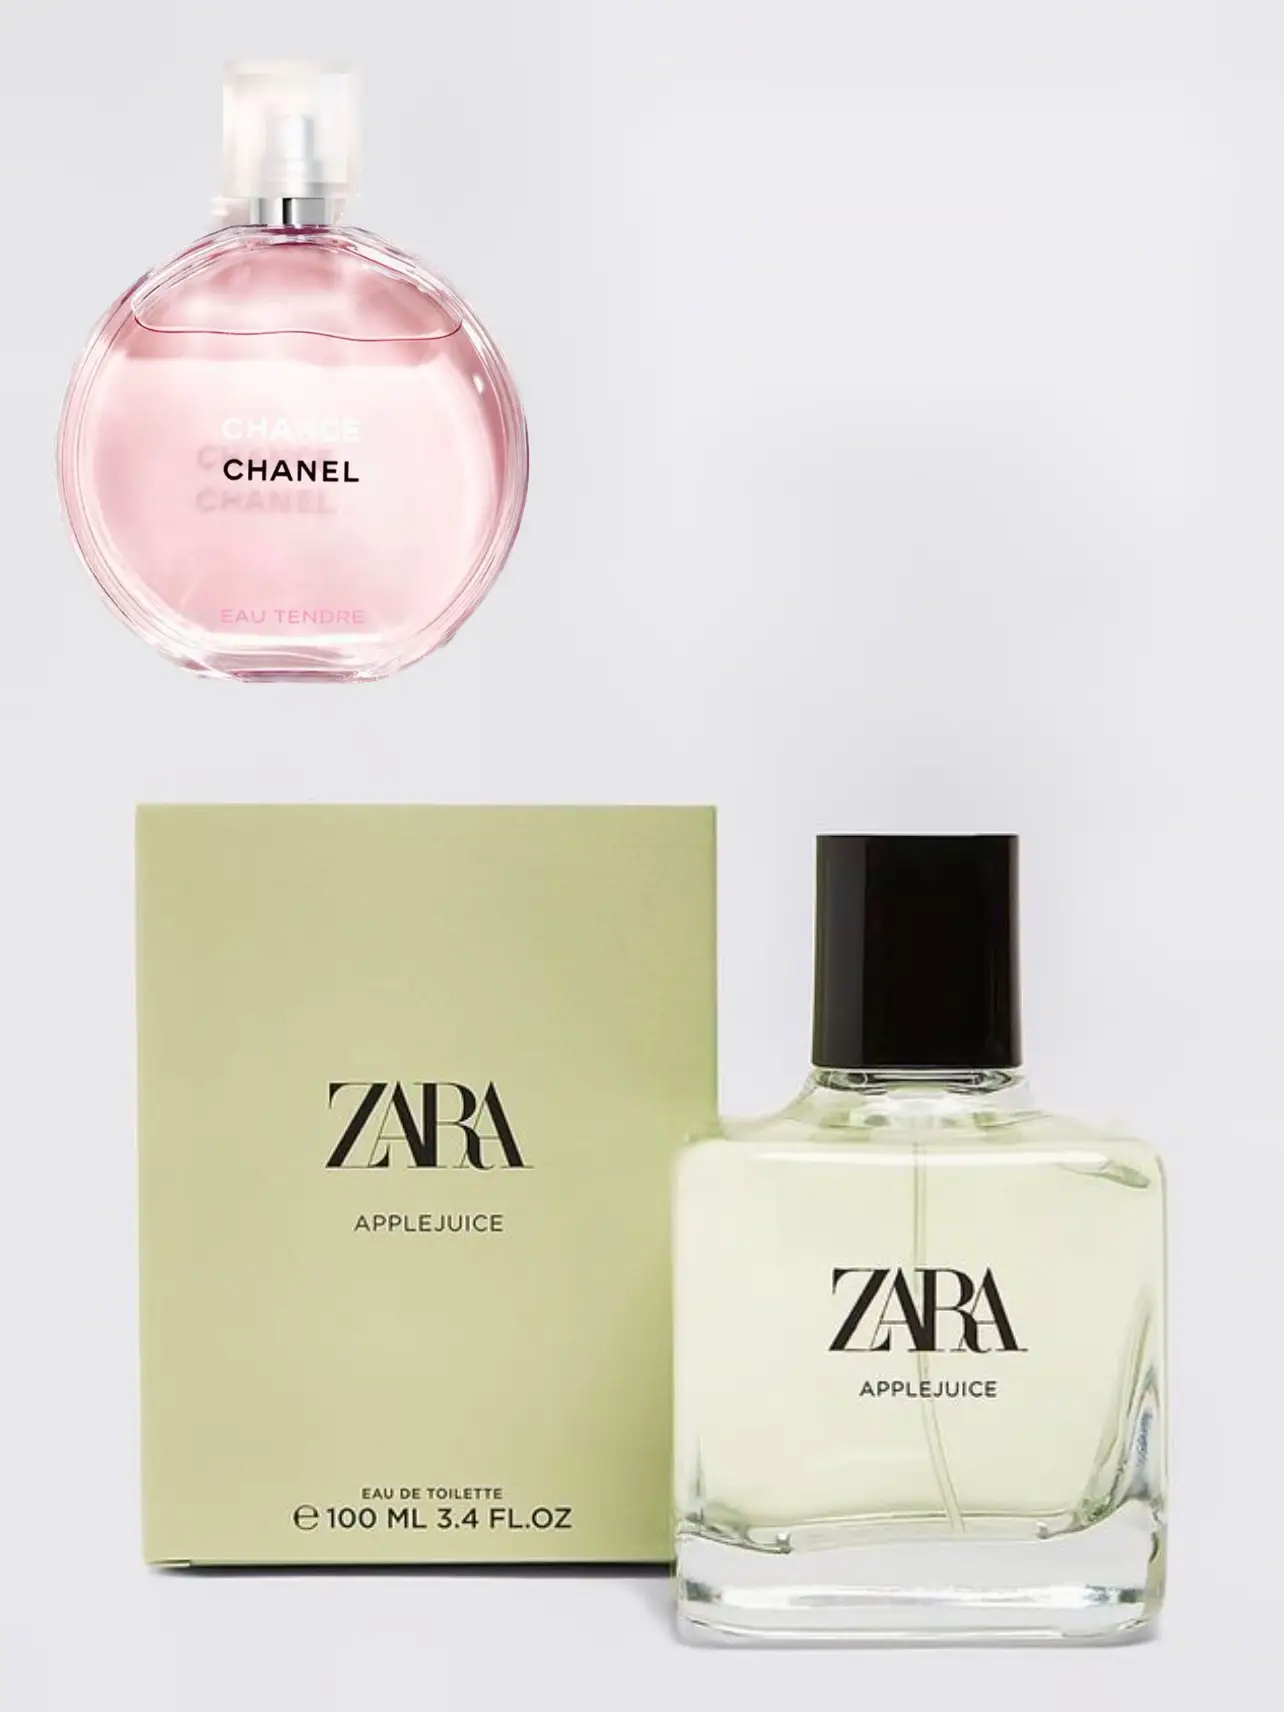 CHANEL Chance EAU TENDRE Mini Perfume bottle RARE NEW